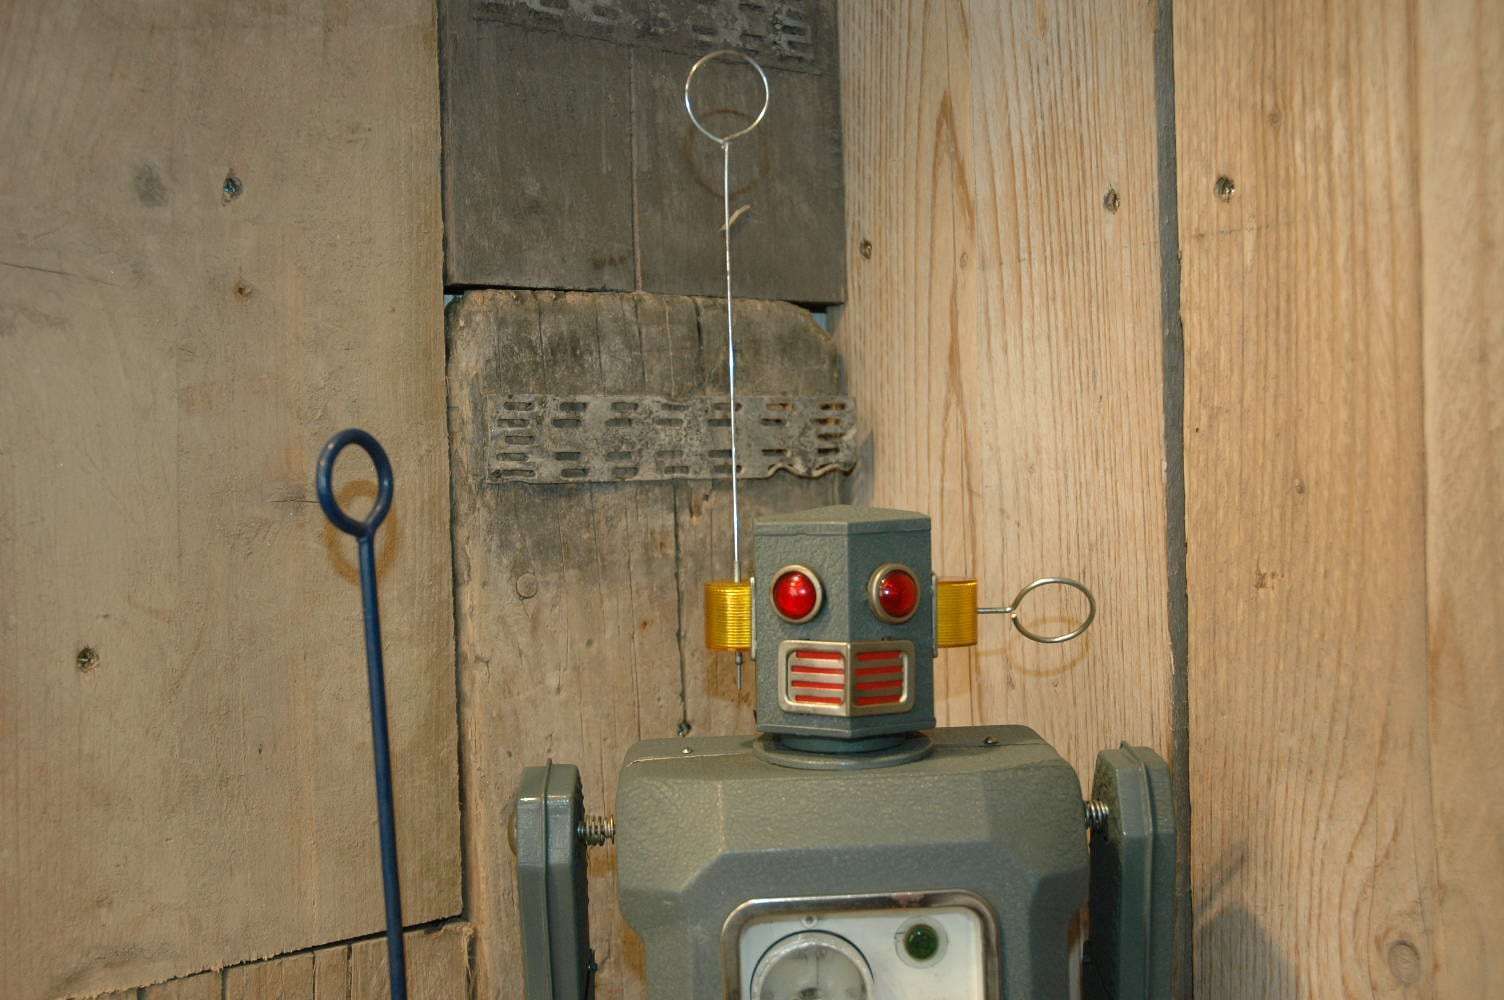 Modern Toys - Radicon Robot